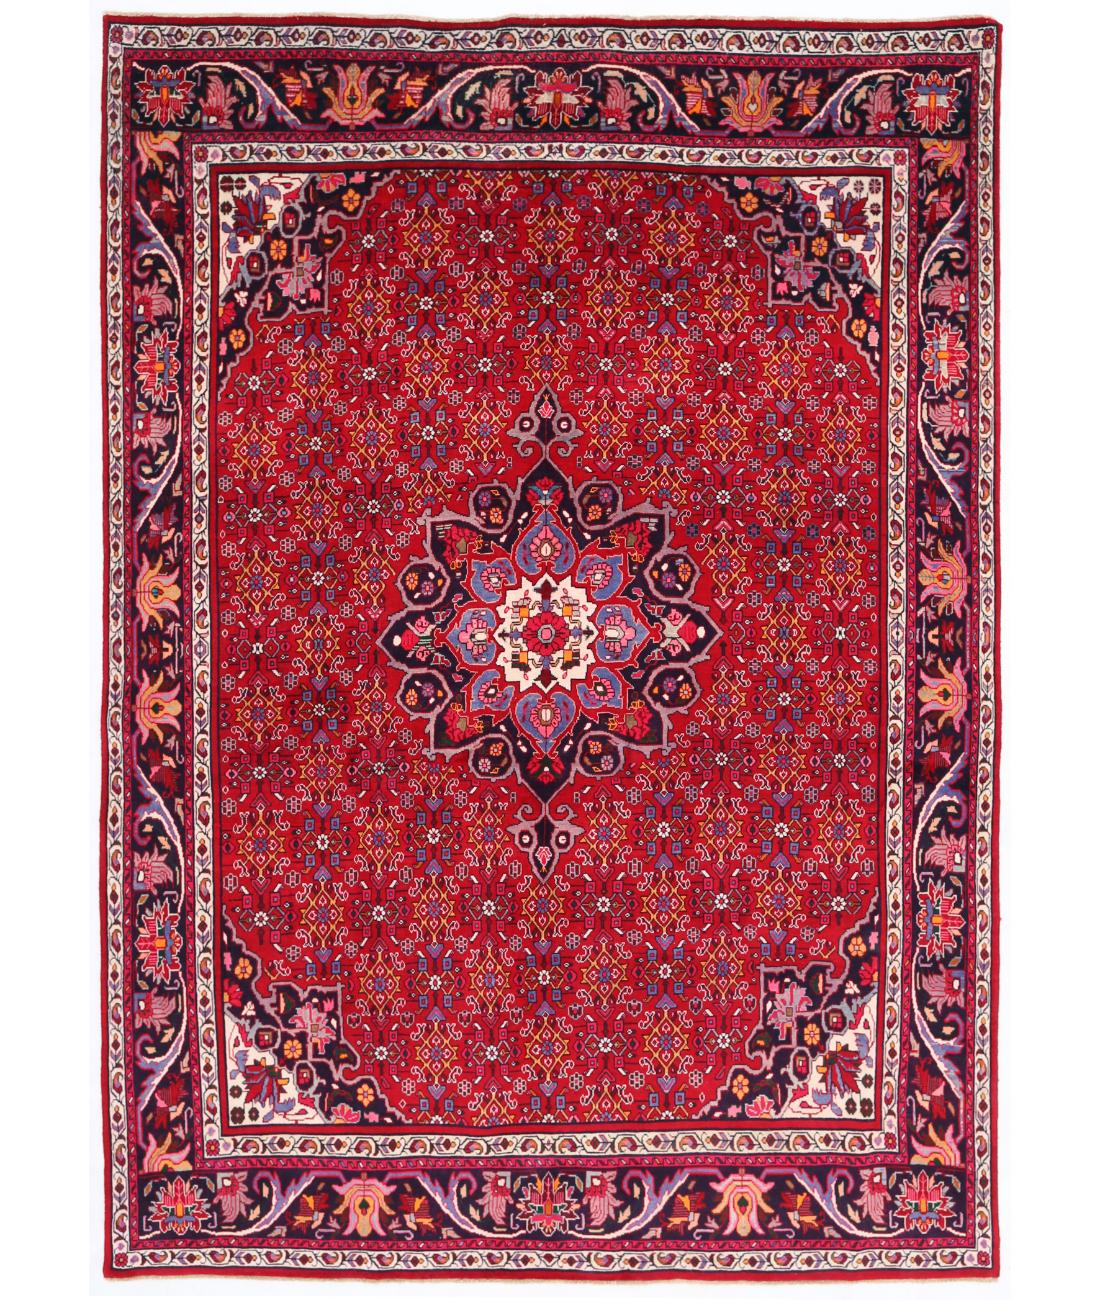 Hand Knotted Persian Bijar Wool Rug - 6'8'' x 9'5'' 6' 8" X 9' 5" ( 203 X 287 ) / Red / Black